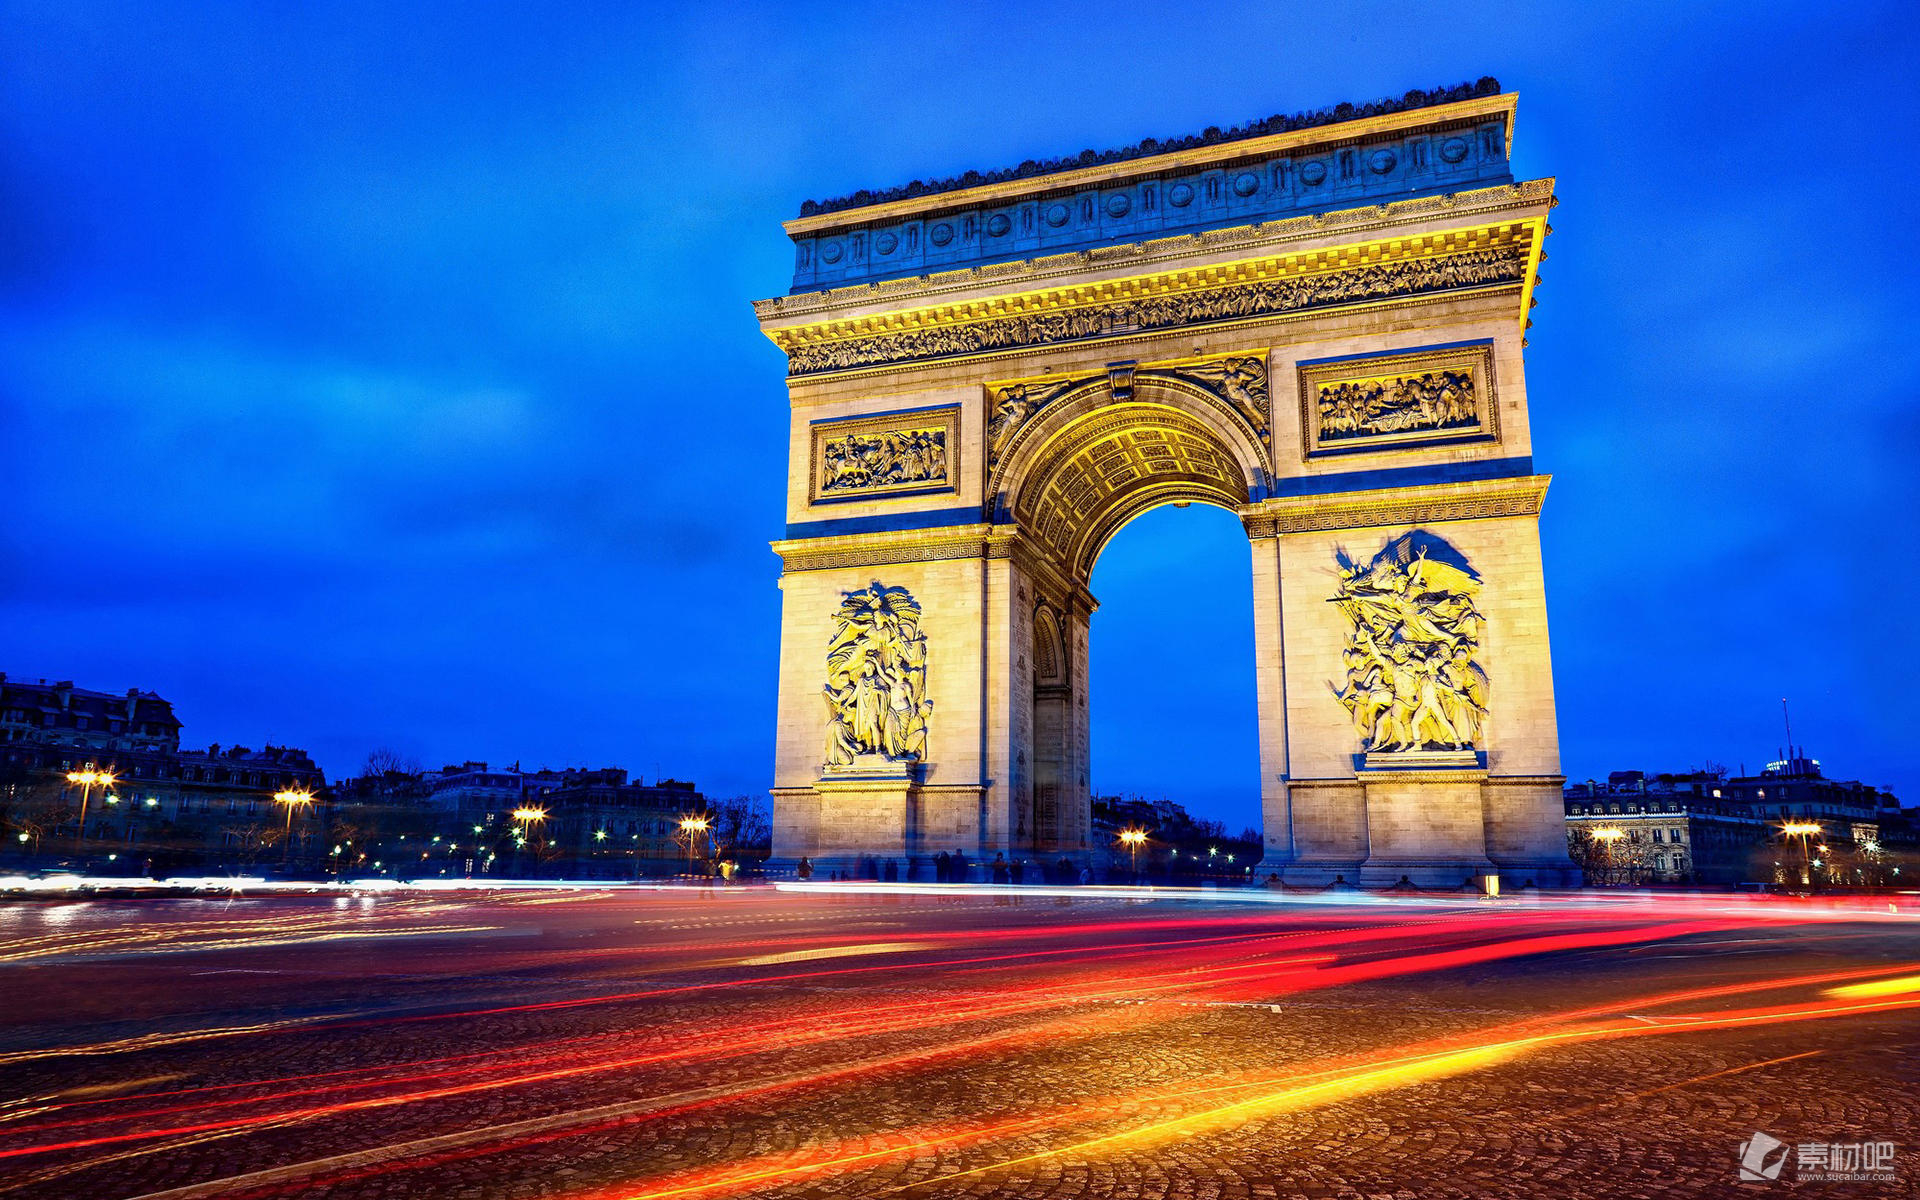 法国巴黎埃菲尔铁塔高清风景壁纸-壁纸图片大全